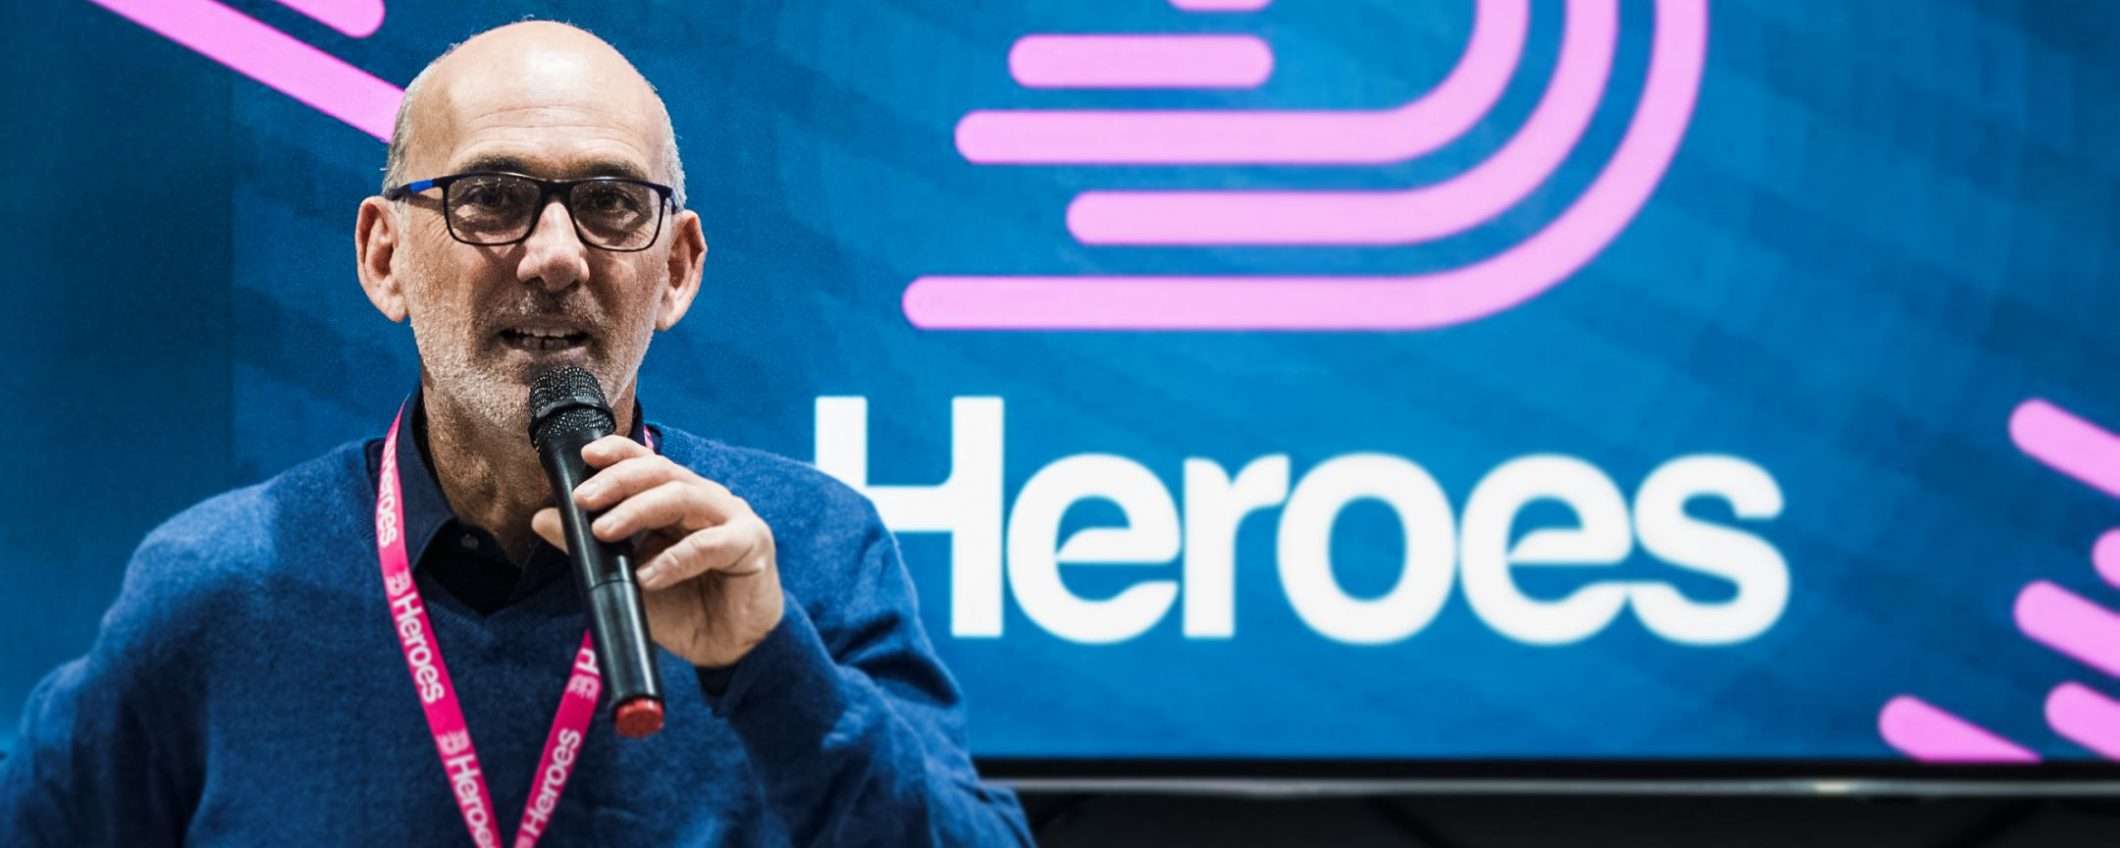 B Heroes, le startup in tv: la sfida è su Sky Uno